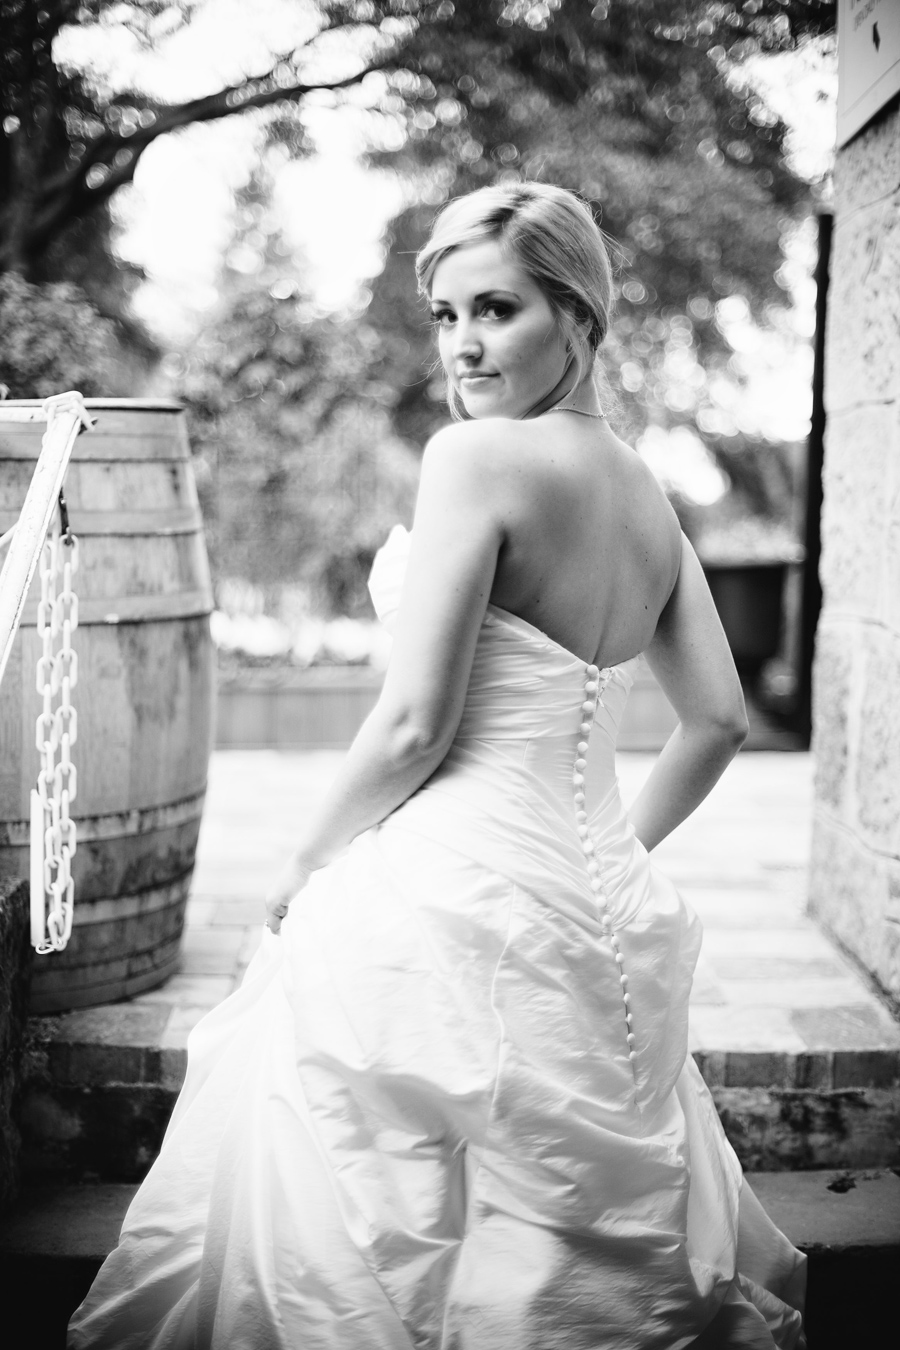 Bride stands next to a wine barrel at the Los Gatos wedding venue.